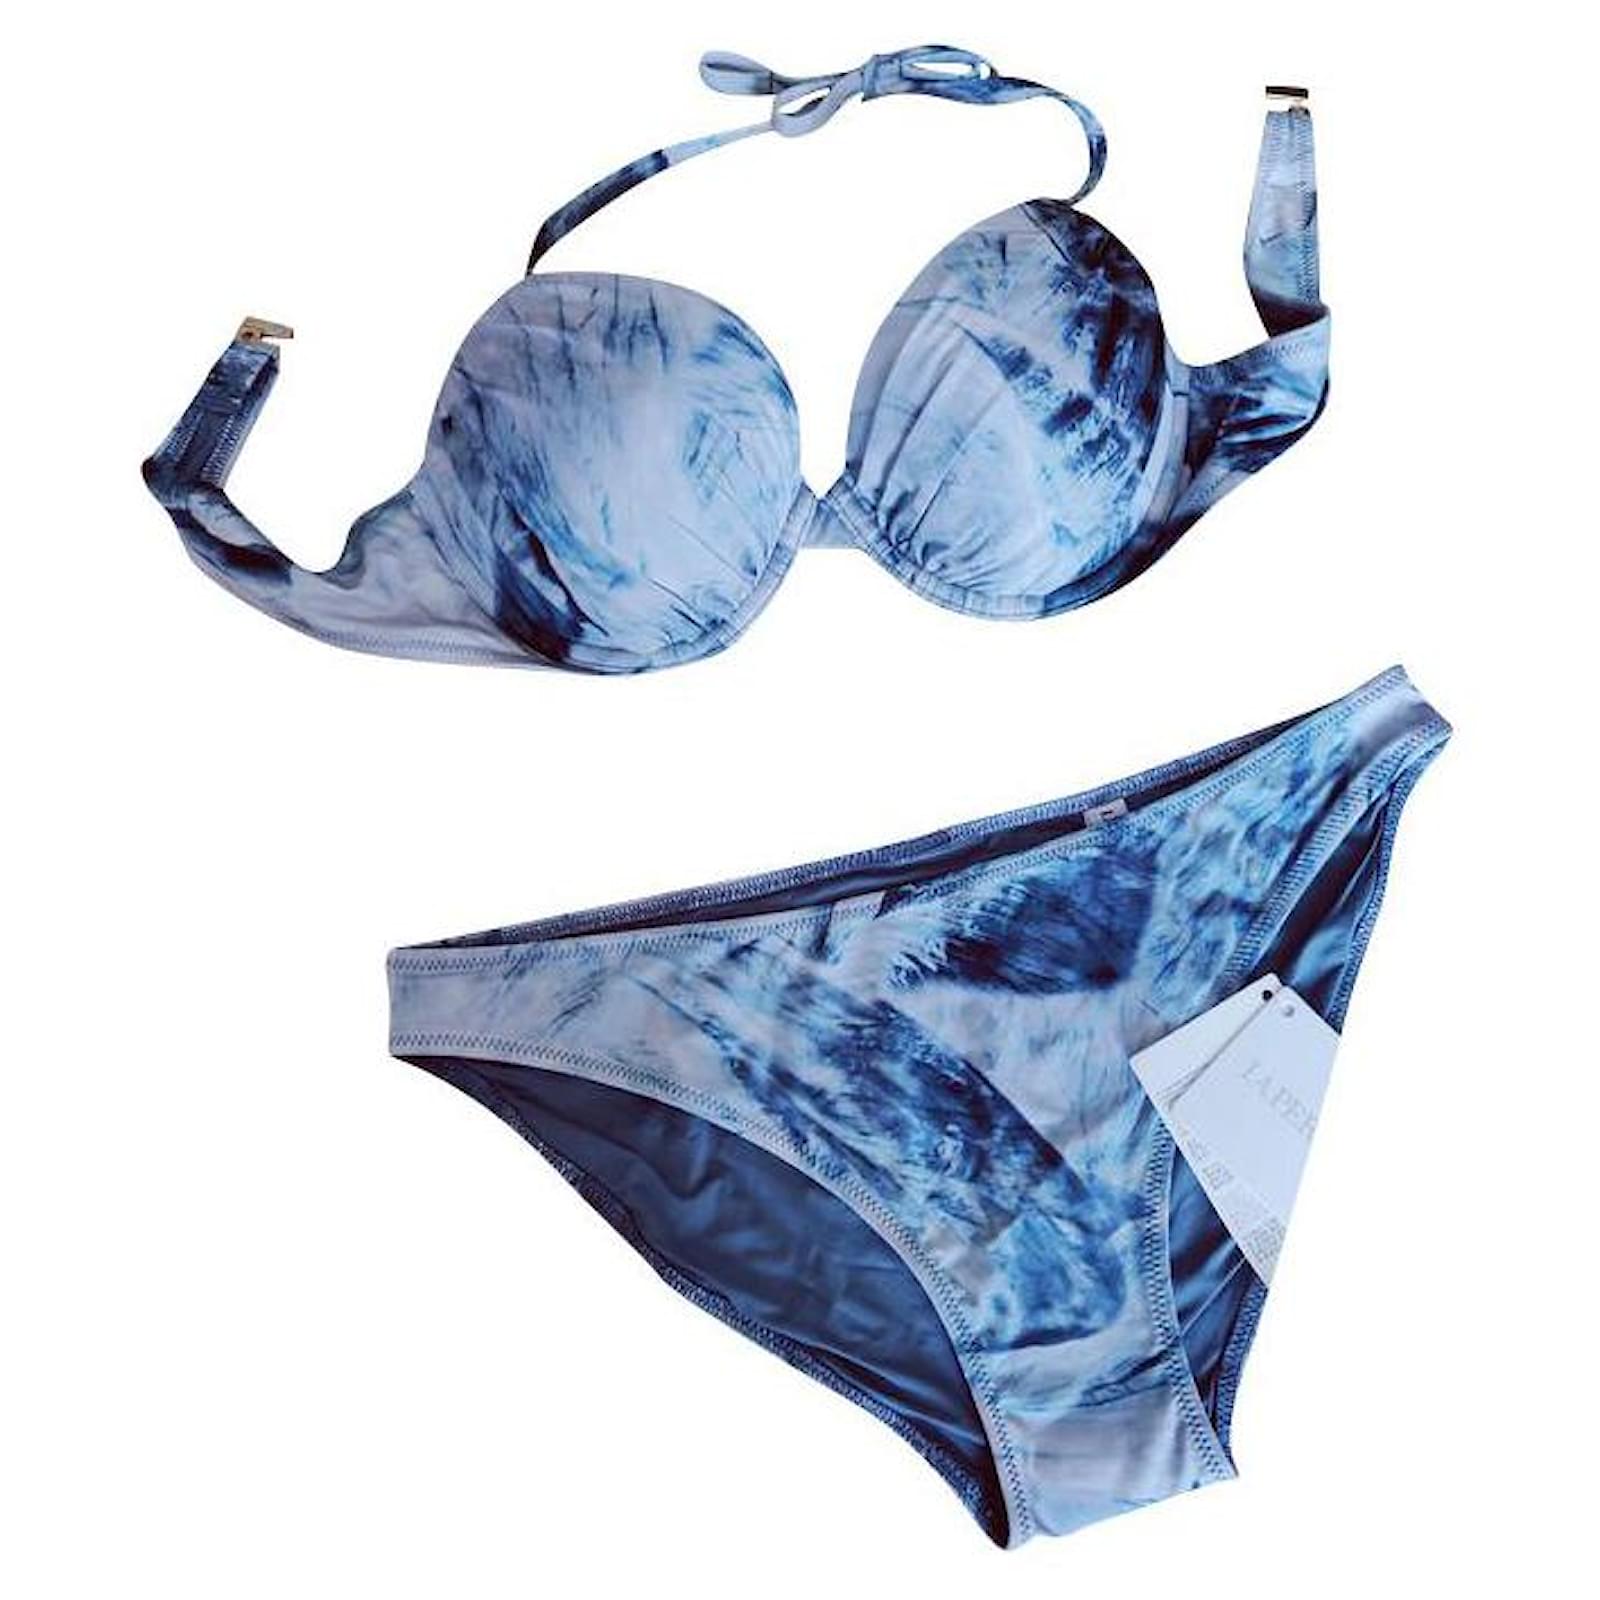 https://cdn1.jolicloset.com/imgr/full/2023/05/878381-1/la-perla-light-blue-polyamide-swimwear.jpg